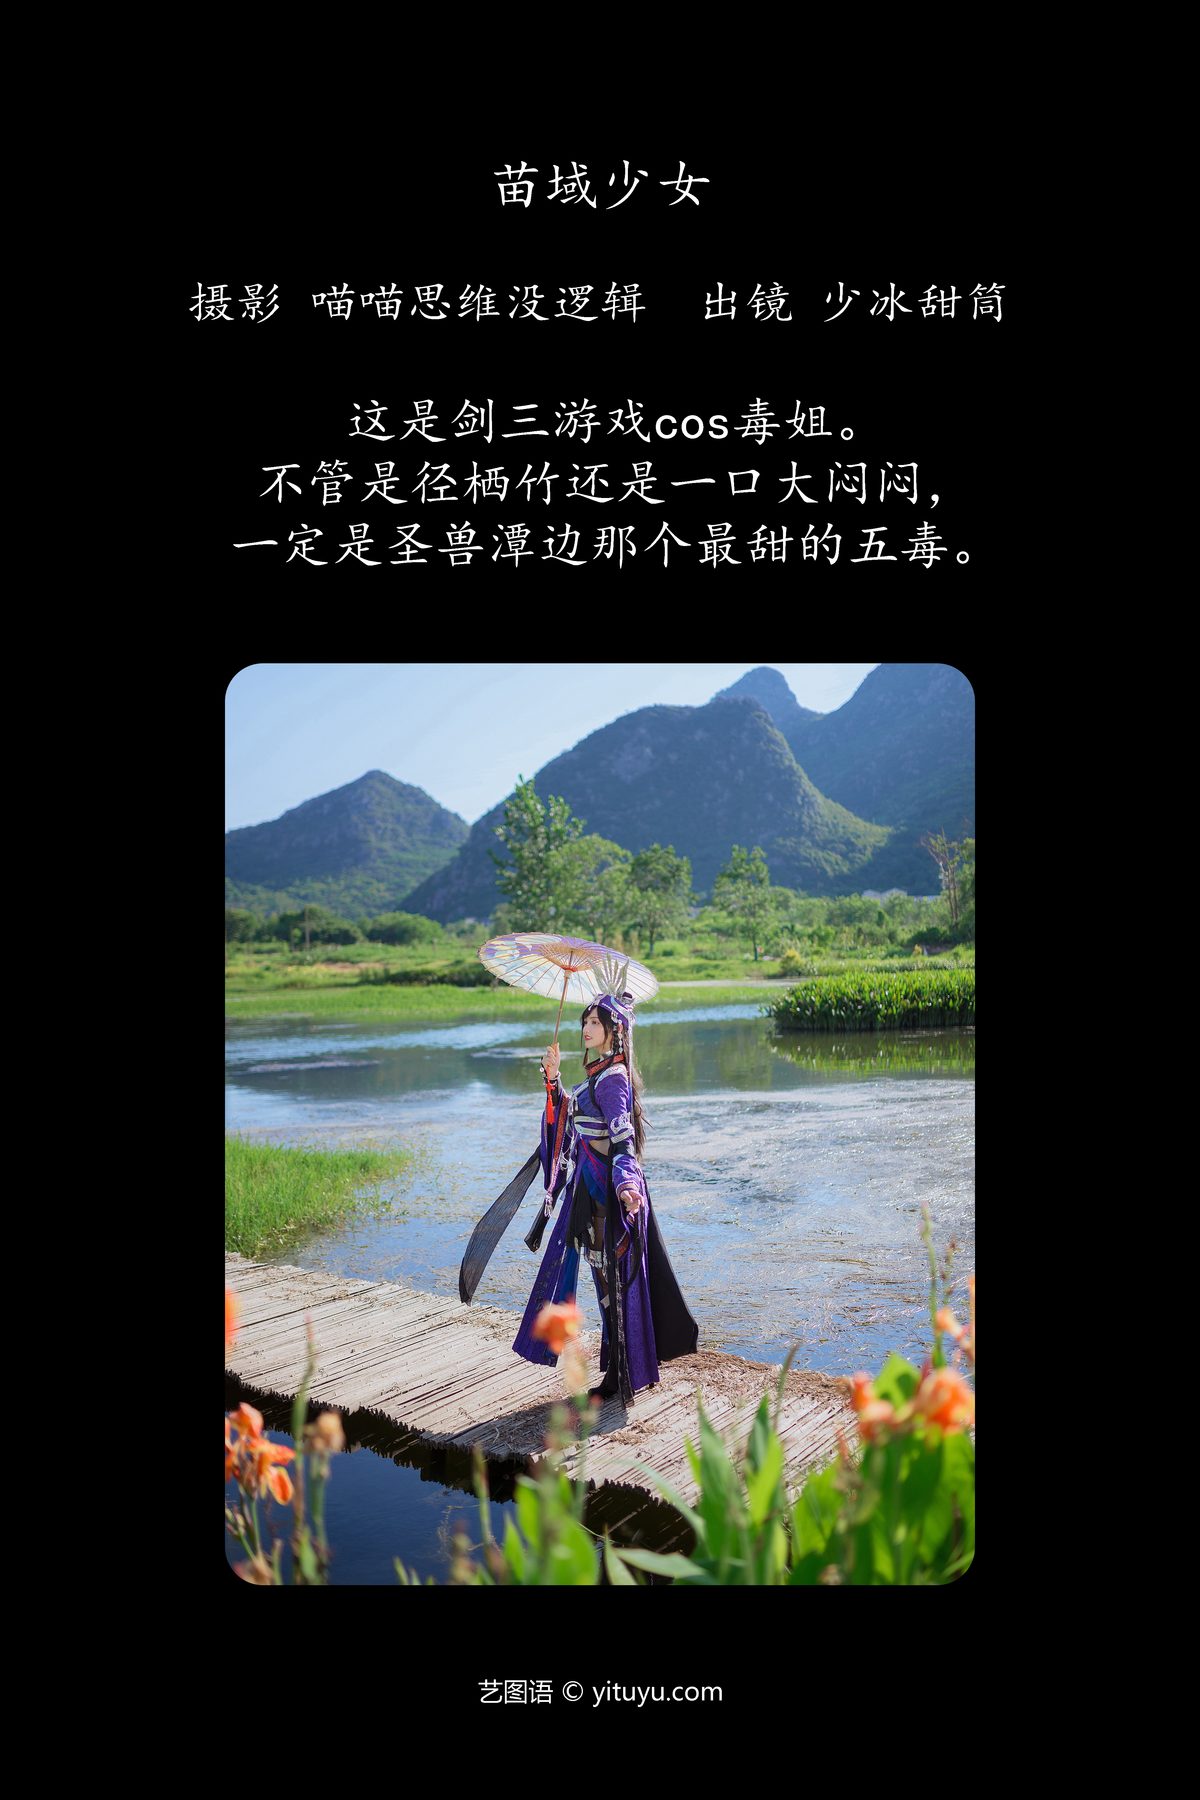 YiTuYu艺图语 Vol 5631 Shao Bing Tian Tong 0002 4578681139.jpg